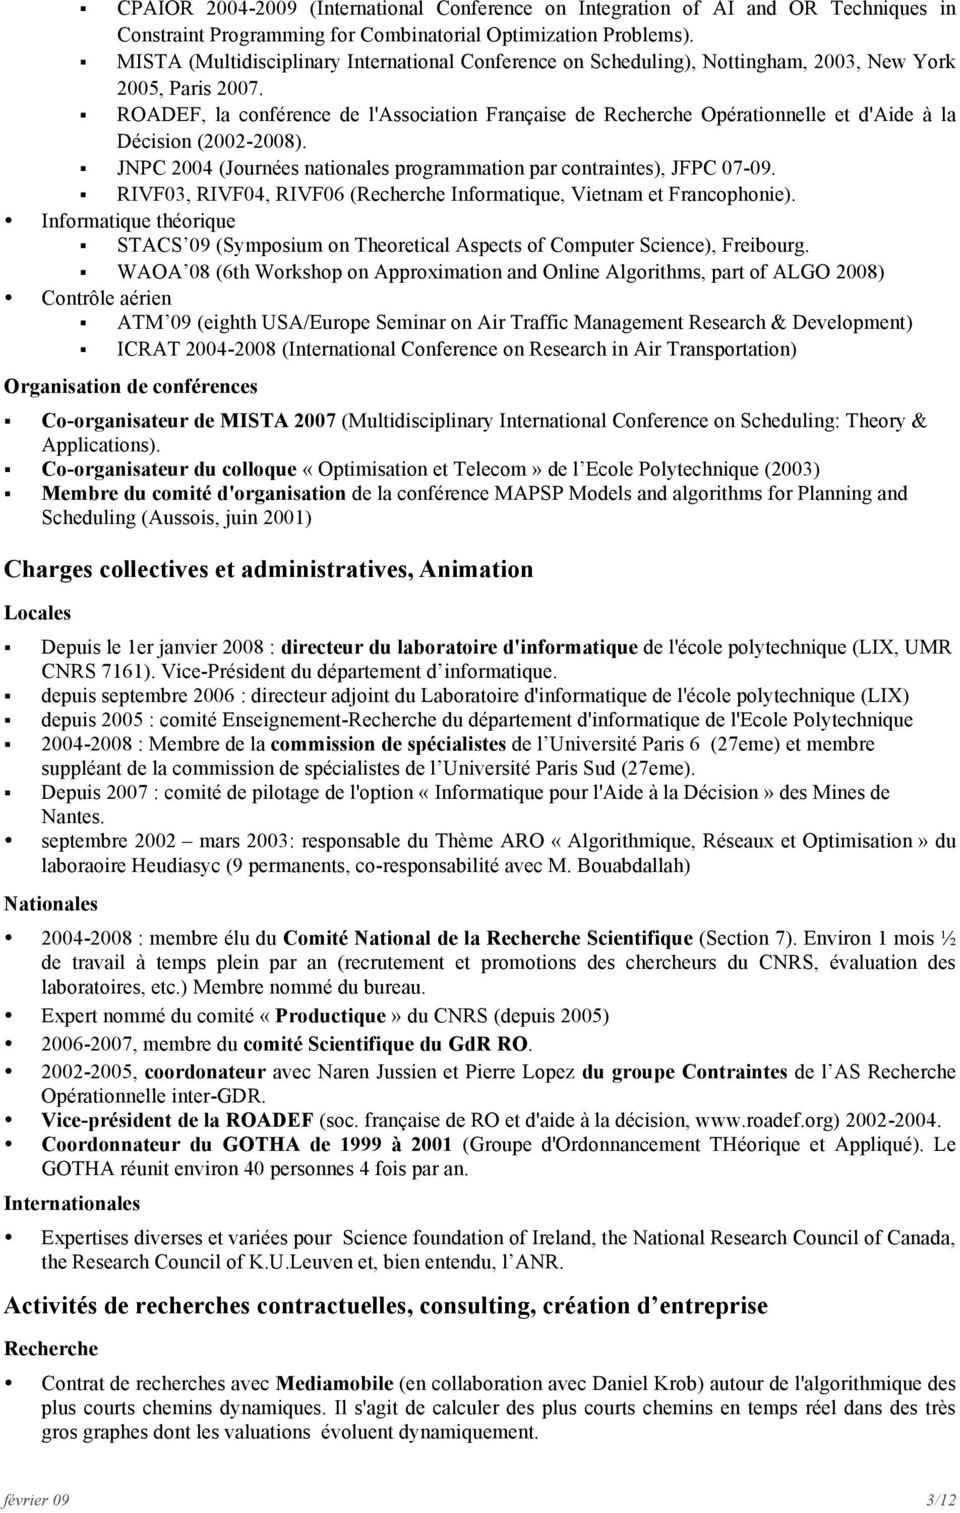 ROADEF, la conférence de l'association Française de Recherche Opérationnelle et d'aide à la Décision (2002-2008). JNPC 2004 (Journées nationales programmation par contraintes), JFPC 07-09.